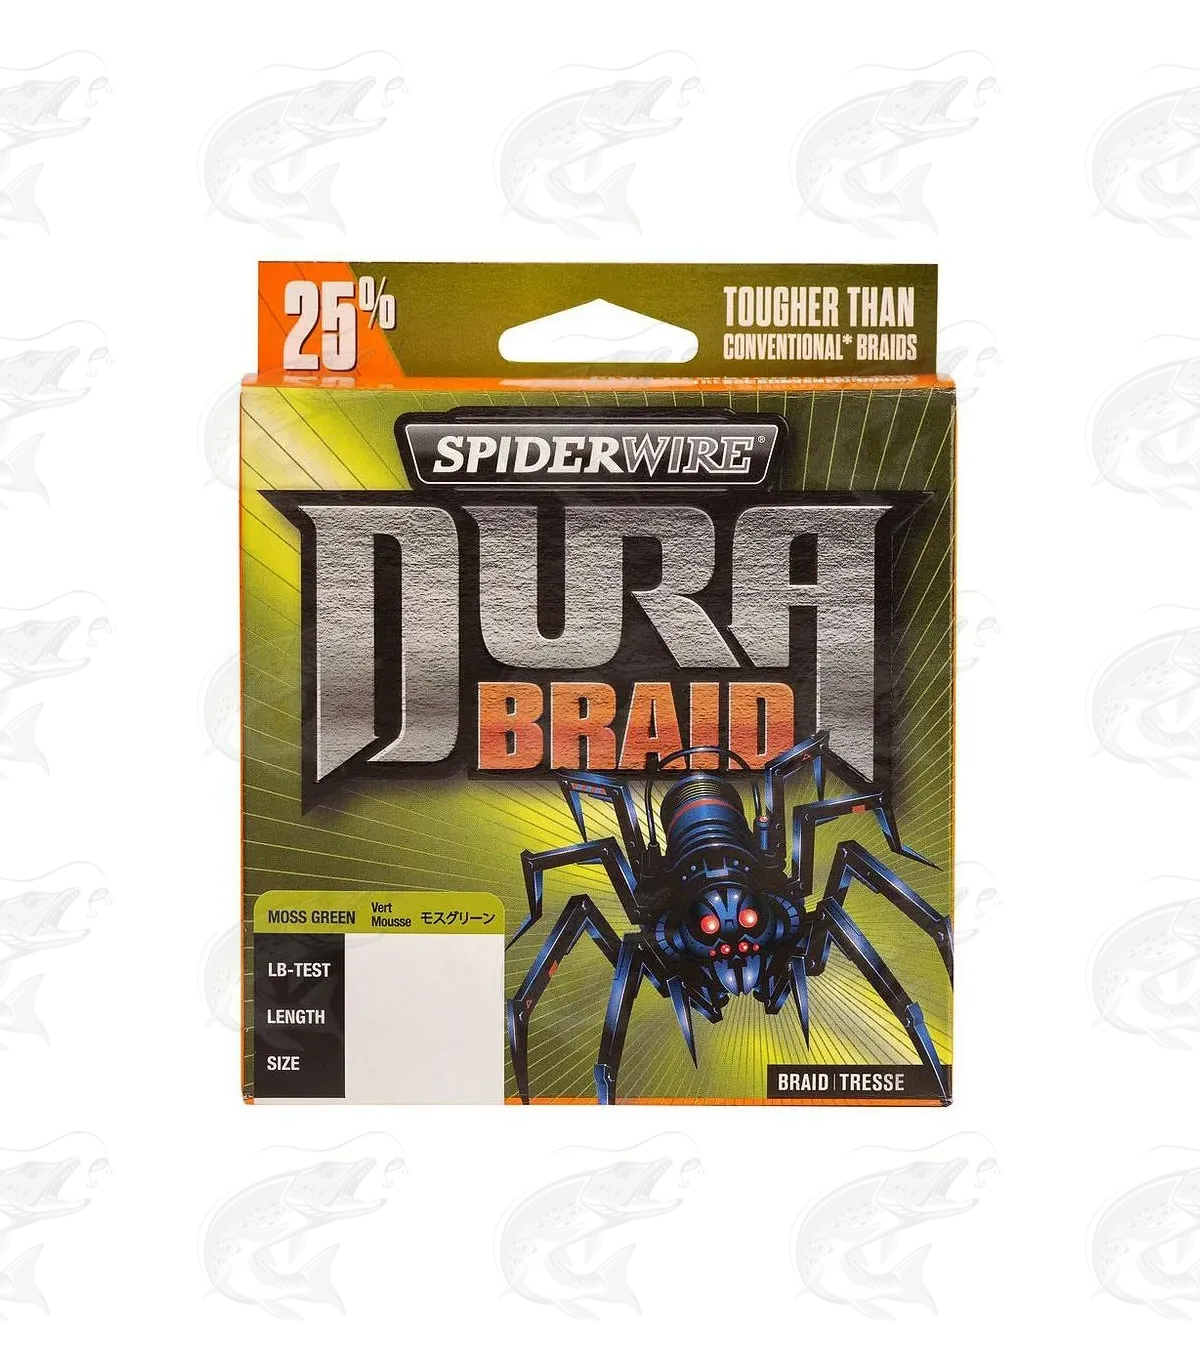 SpiderWire DuraBraid braided line